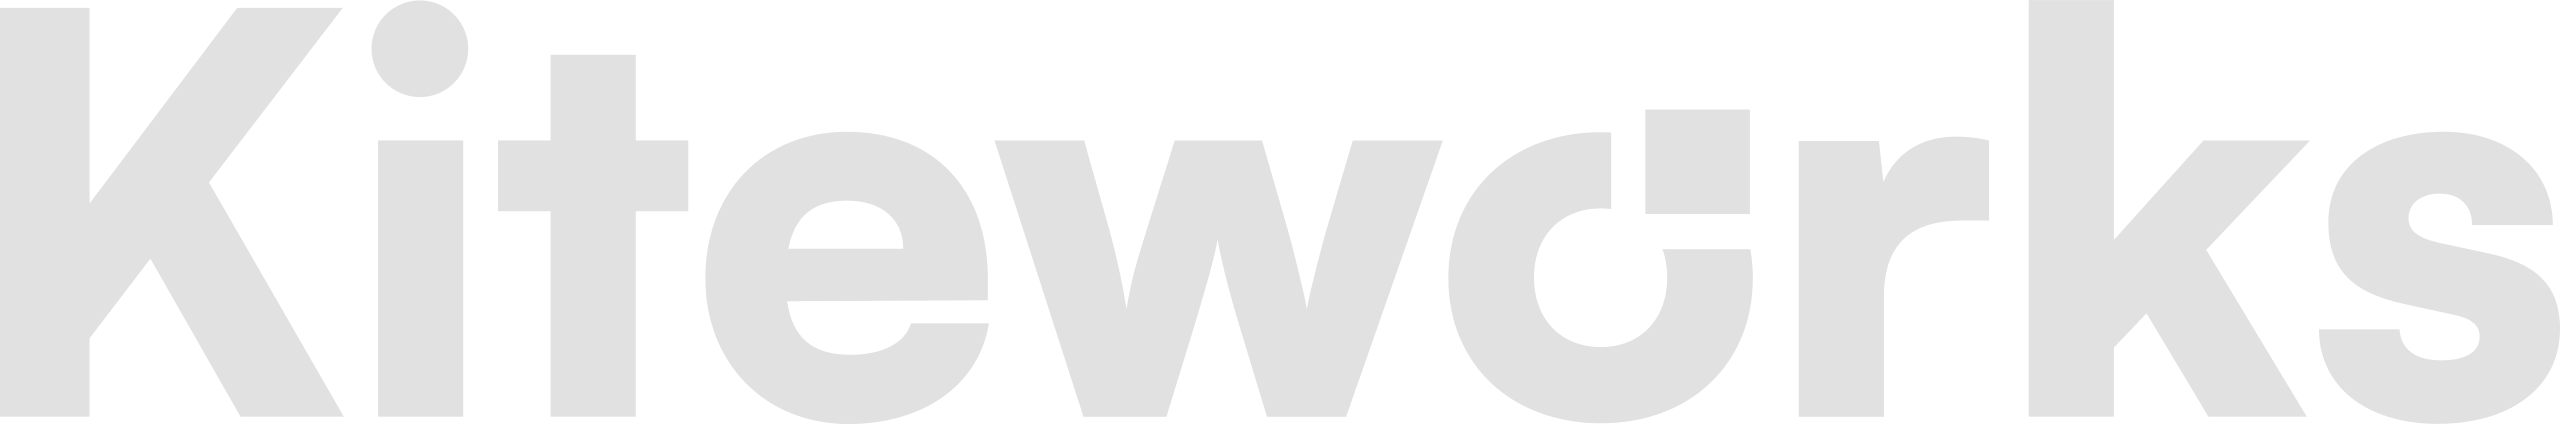 Kiteworks Logo